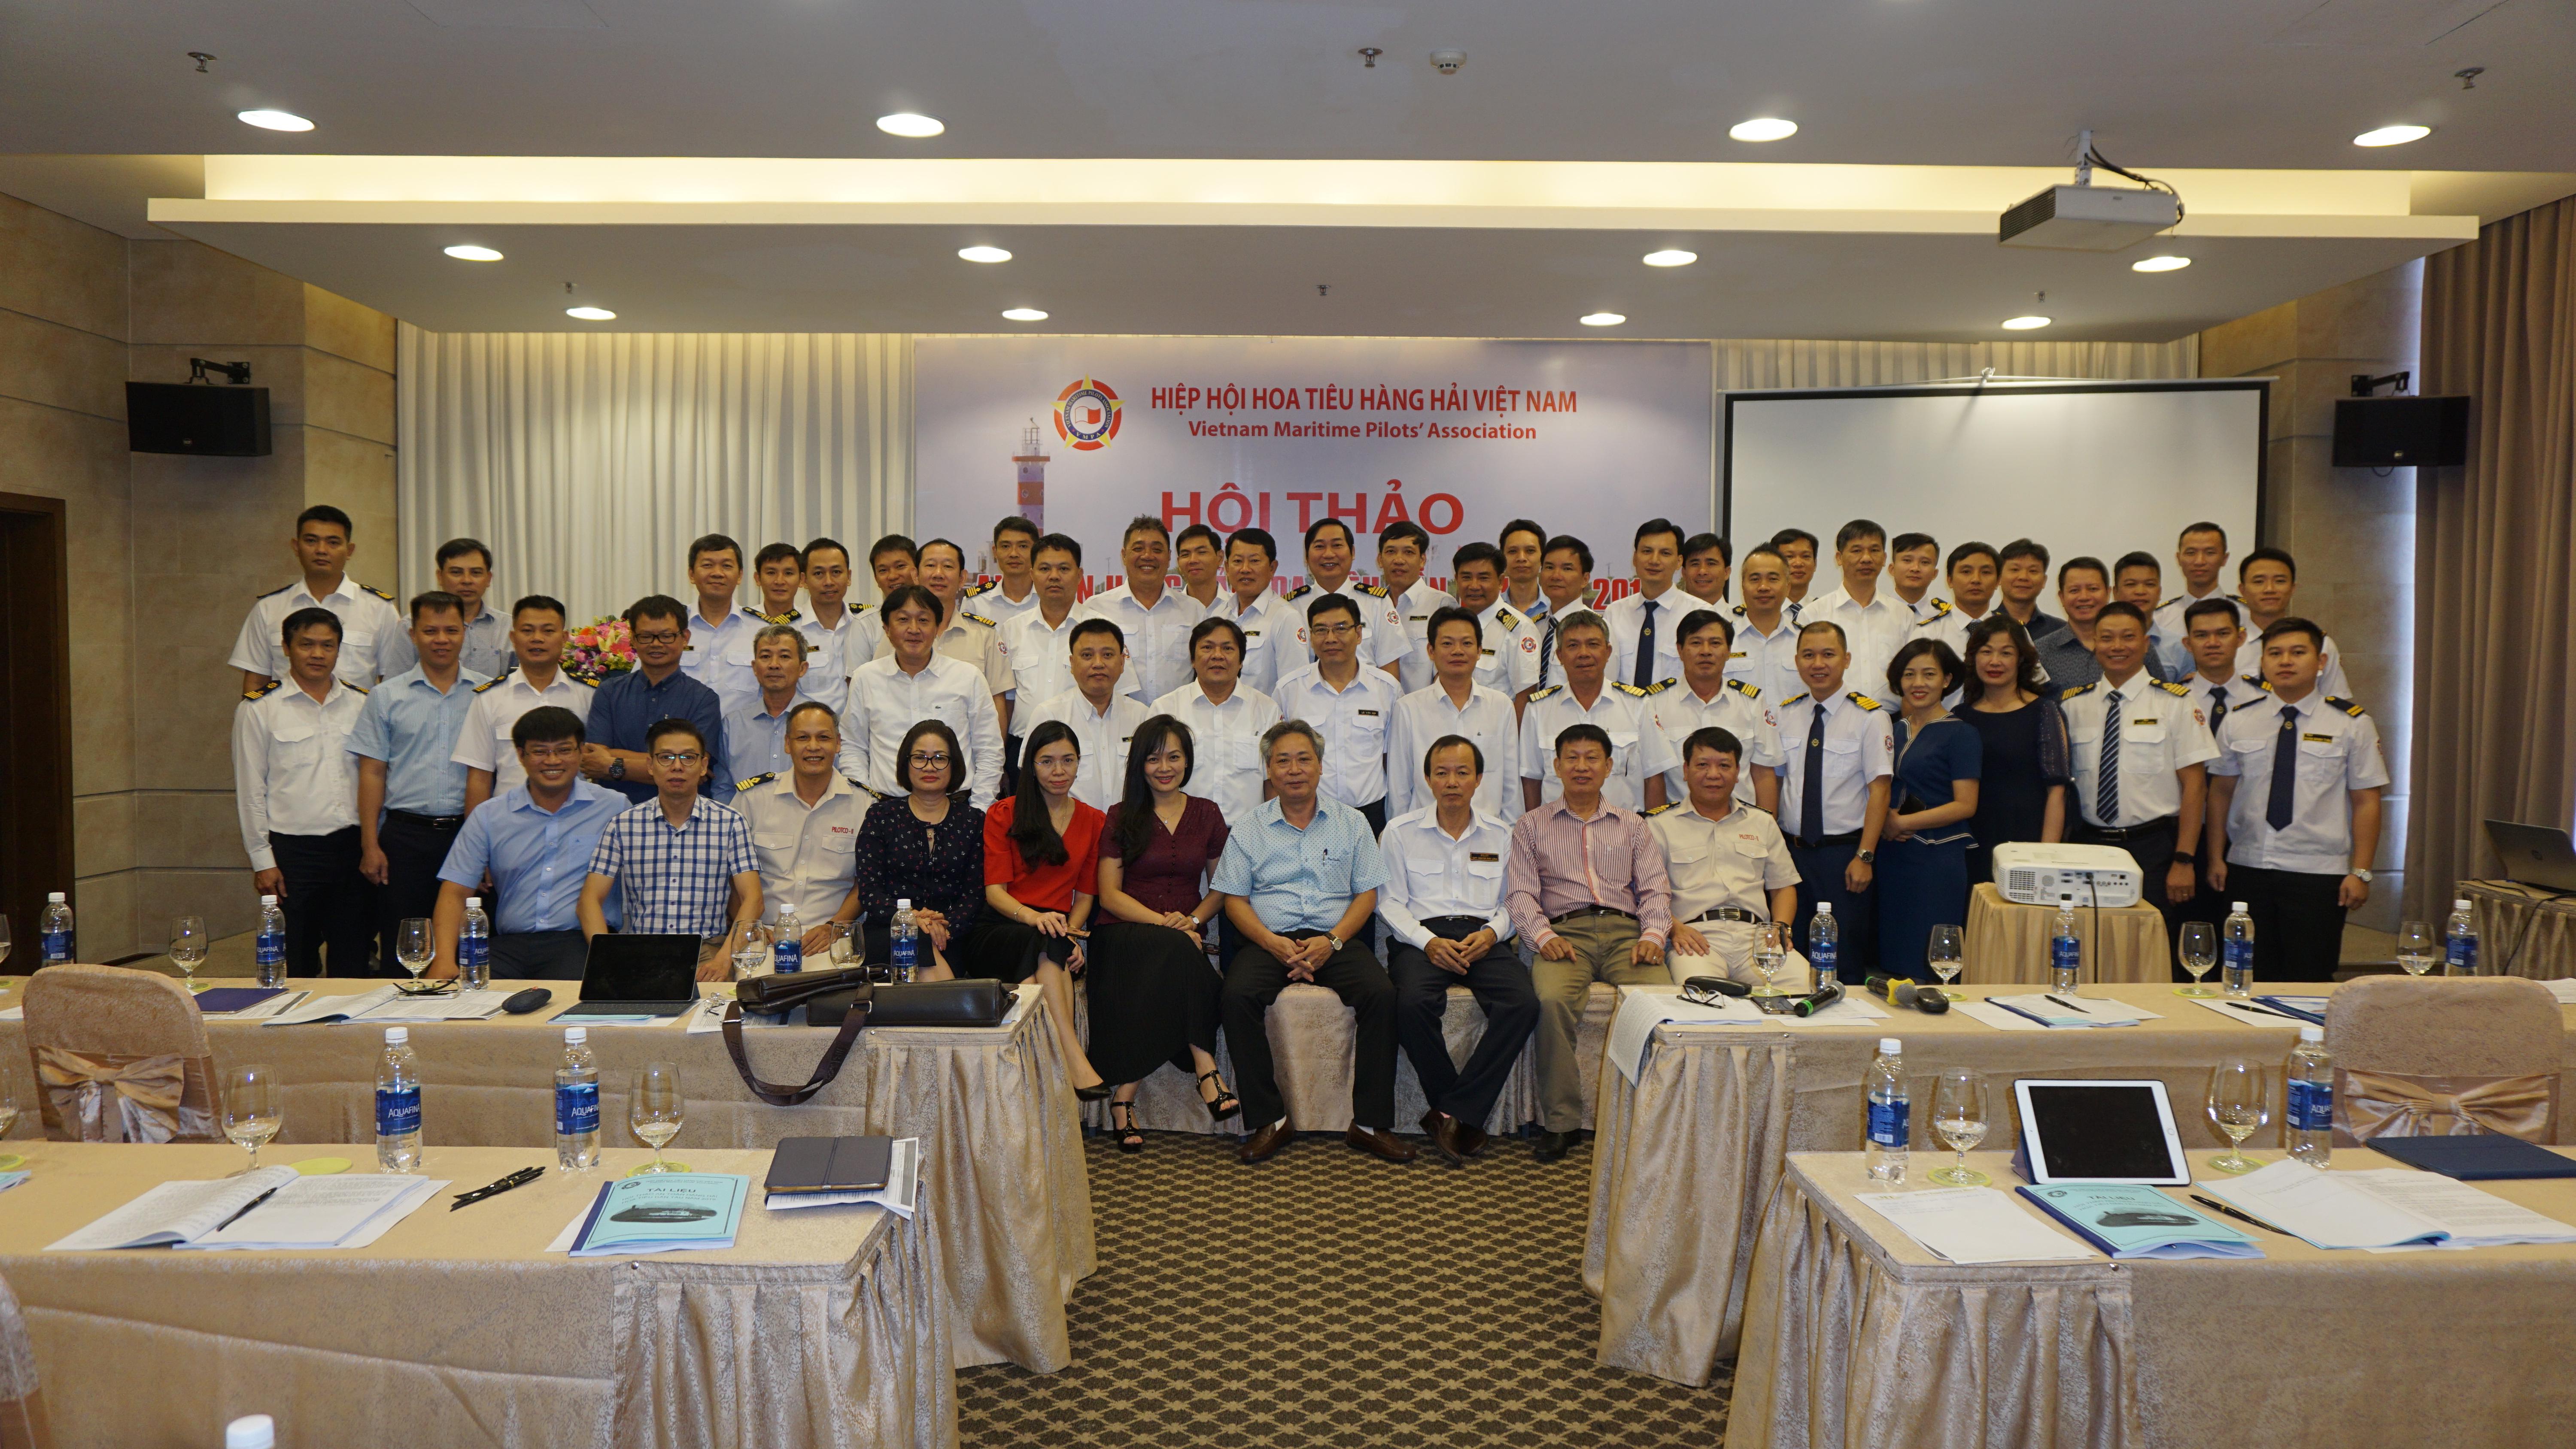 Hội thảo an toàn hàng hải hoa tiêu dẫn tàu năm 2019 Hiệp hội Hoa tiêu hàng hải Việt Nam